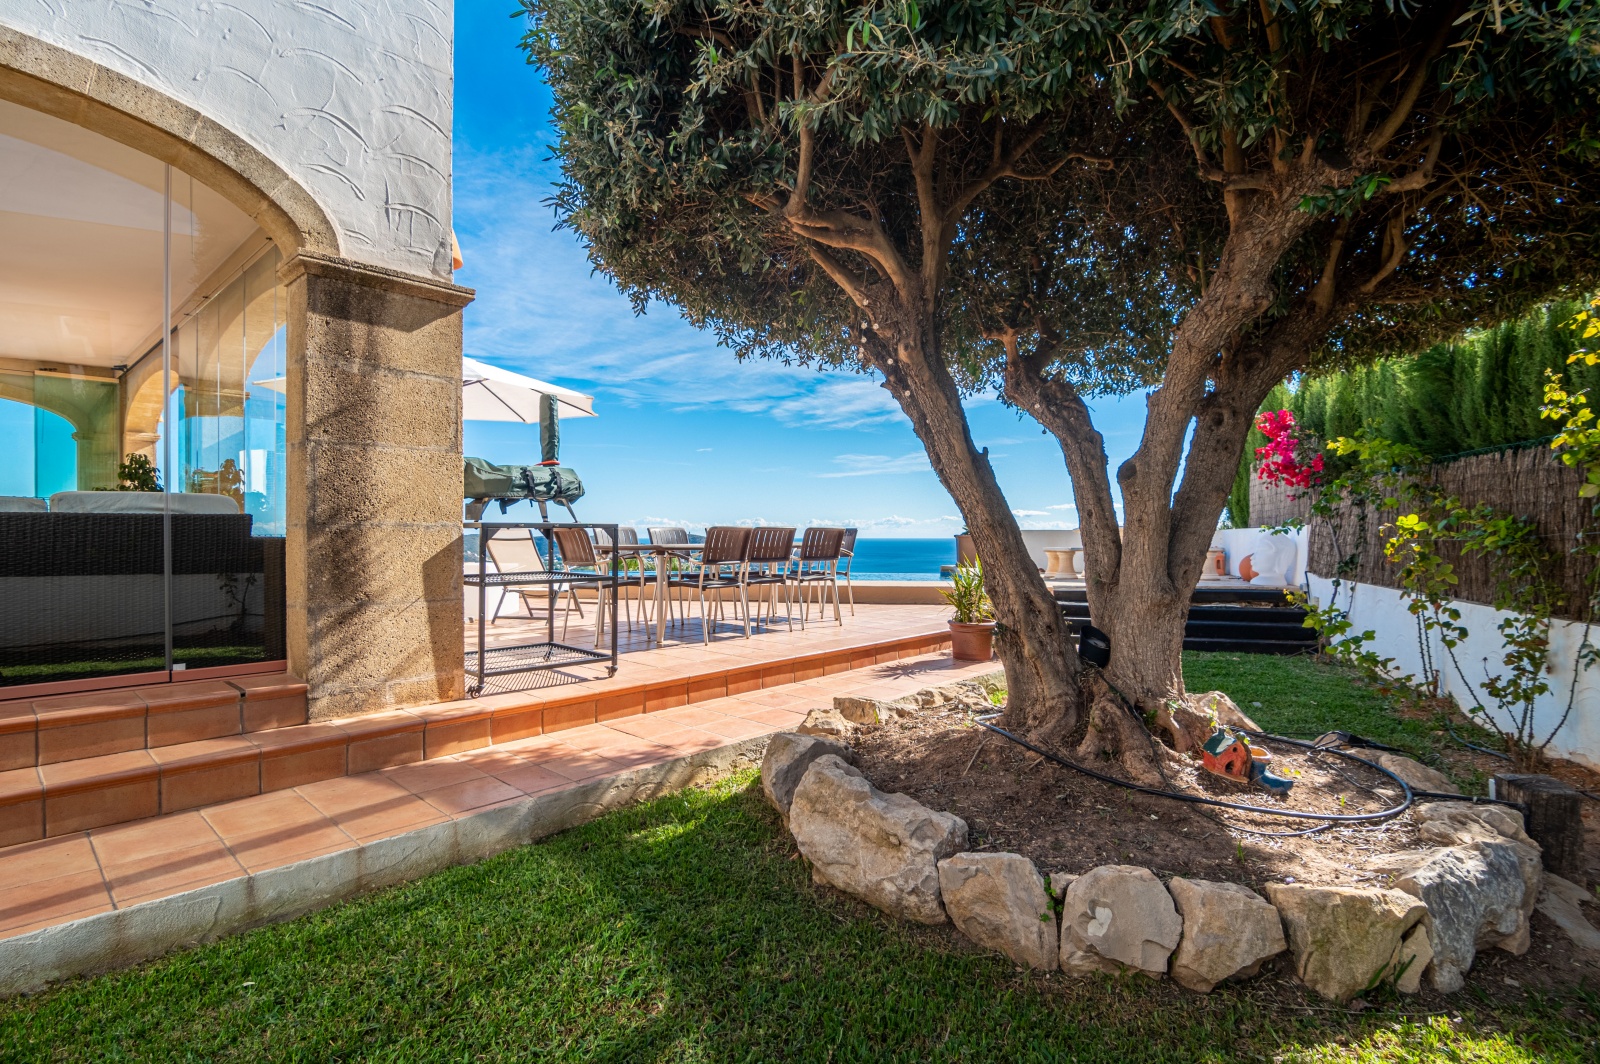 Spacious villa with panoramic sea views